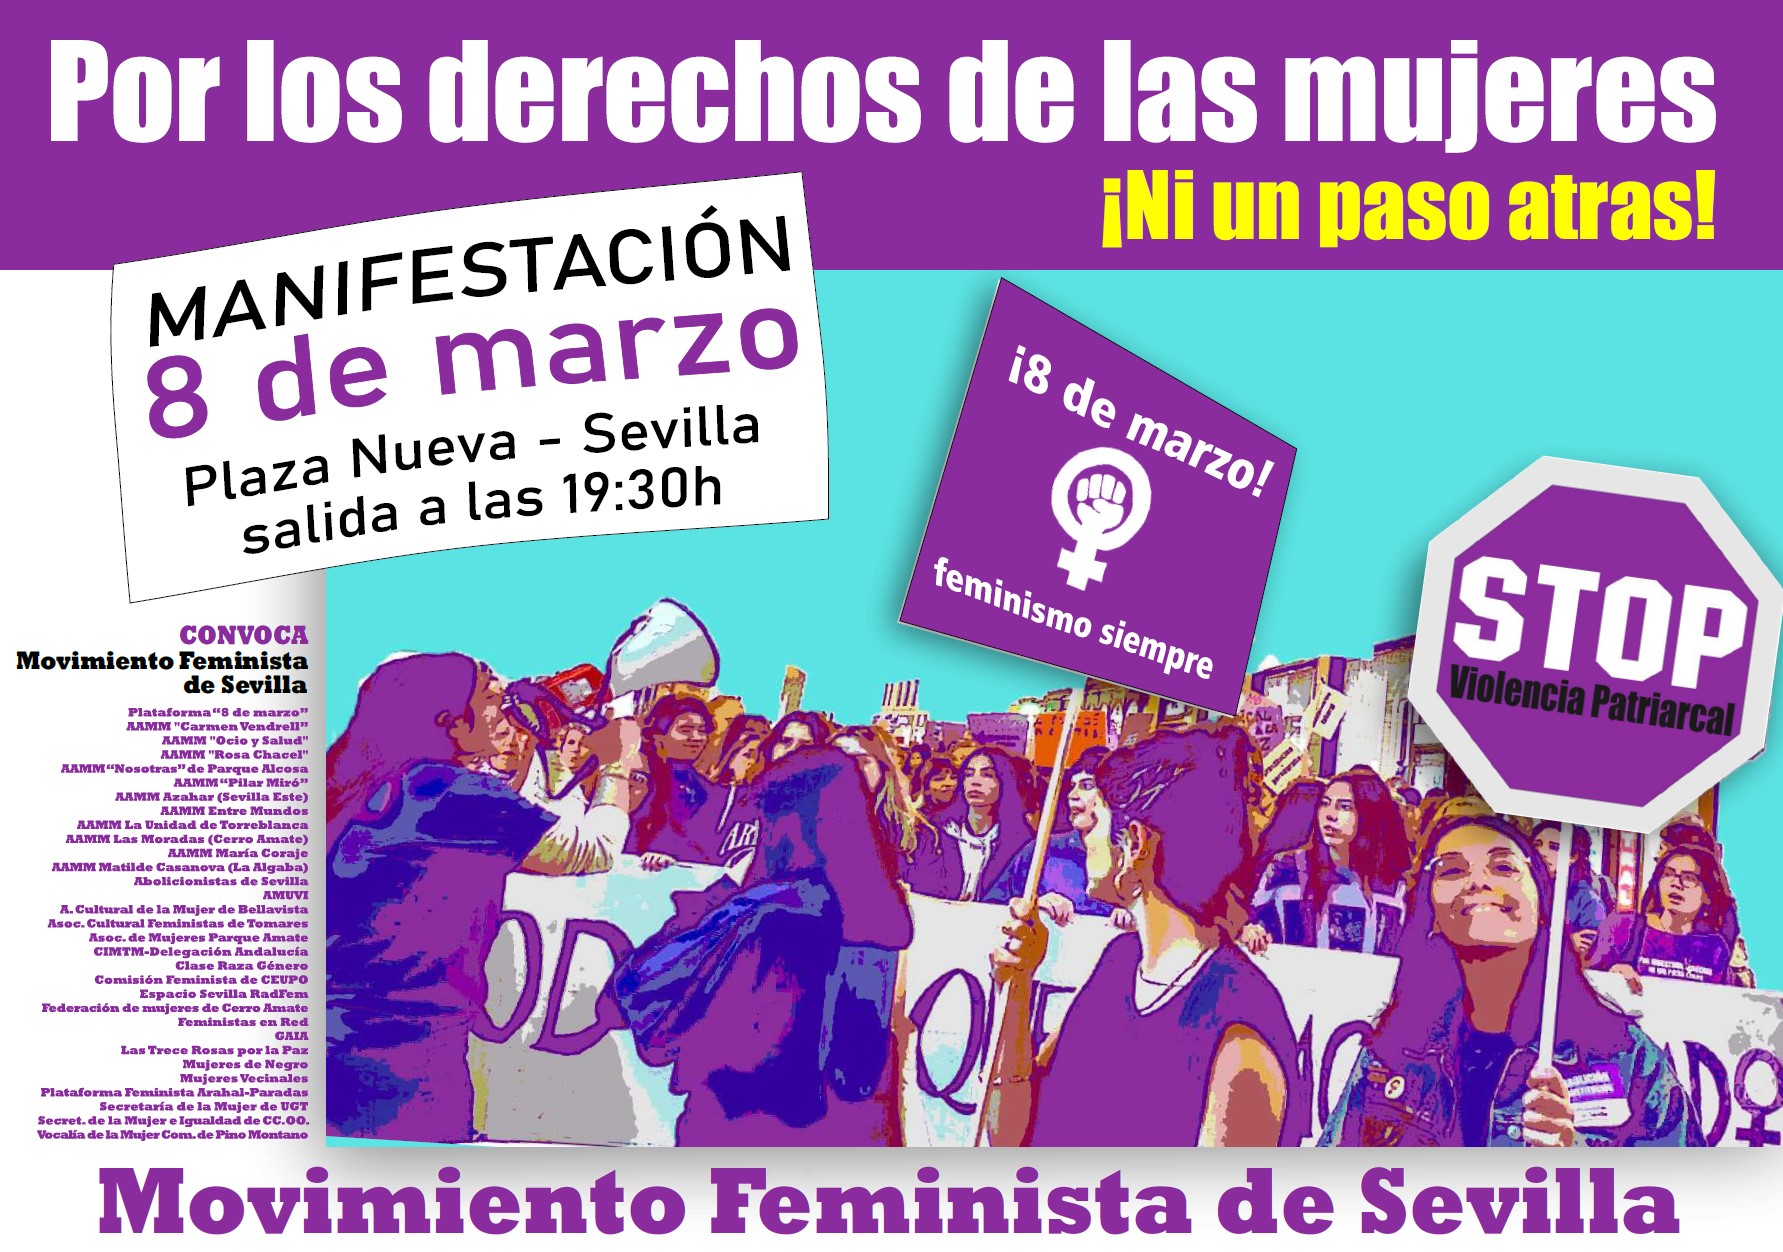 Manifestación 8 de marzo Por los derechos de las mujeres ¡ni un paso atrás!